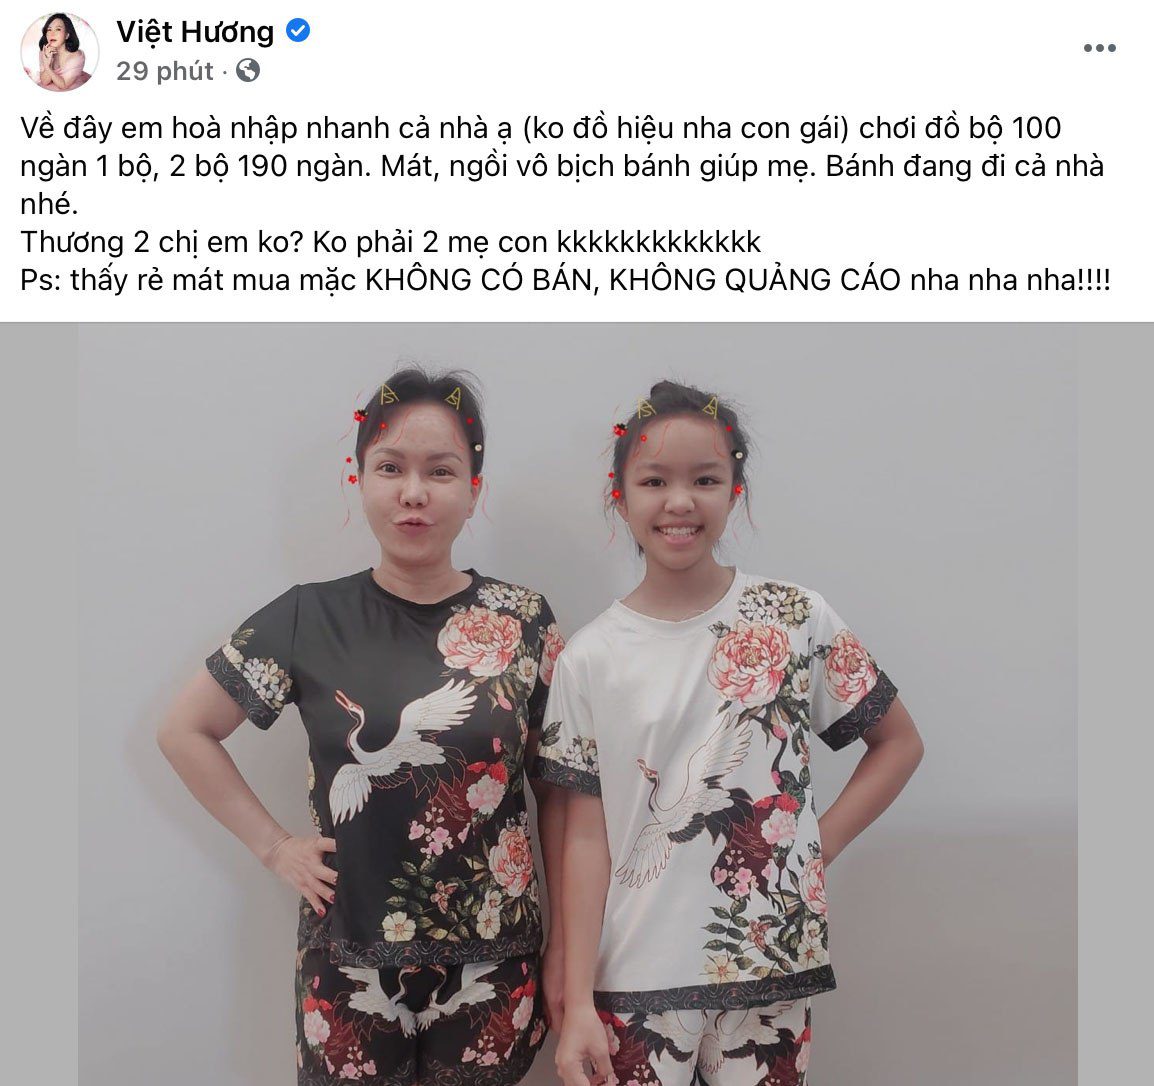 Về nước, toàn diện những bộ đồ 100K, con gái Việt Hương đón sinh nhật lộng lẫy hiếm có - 5